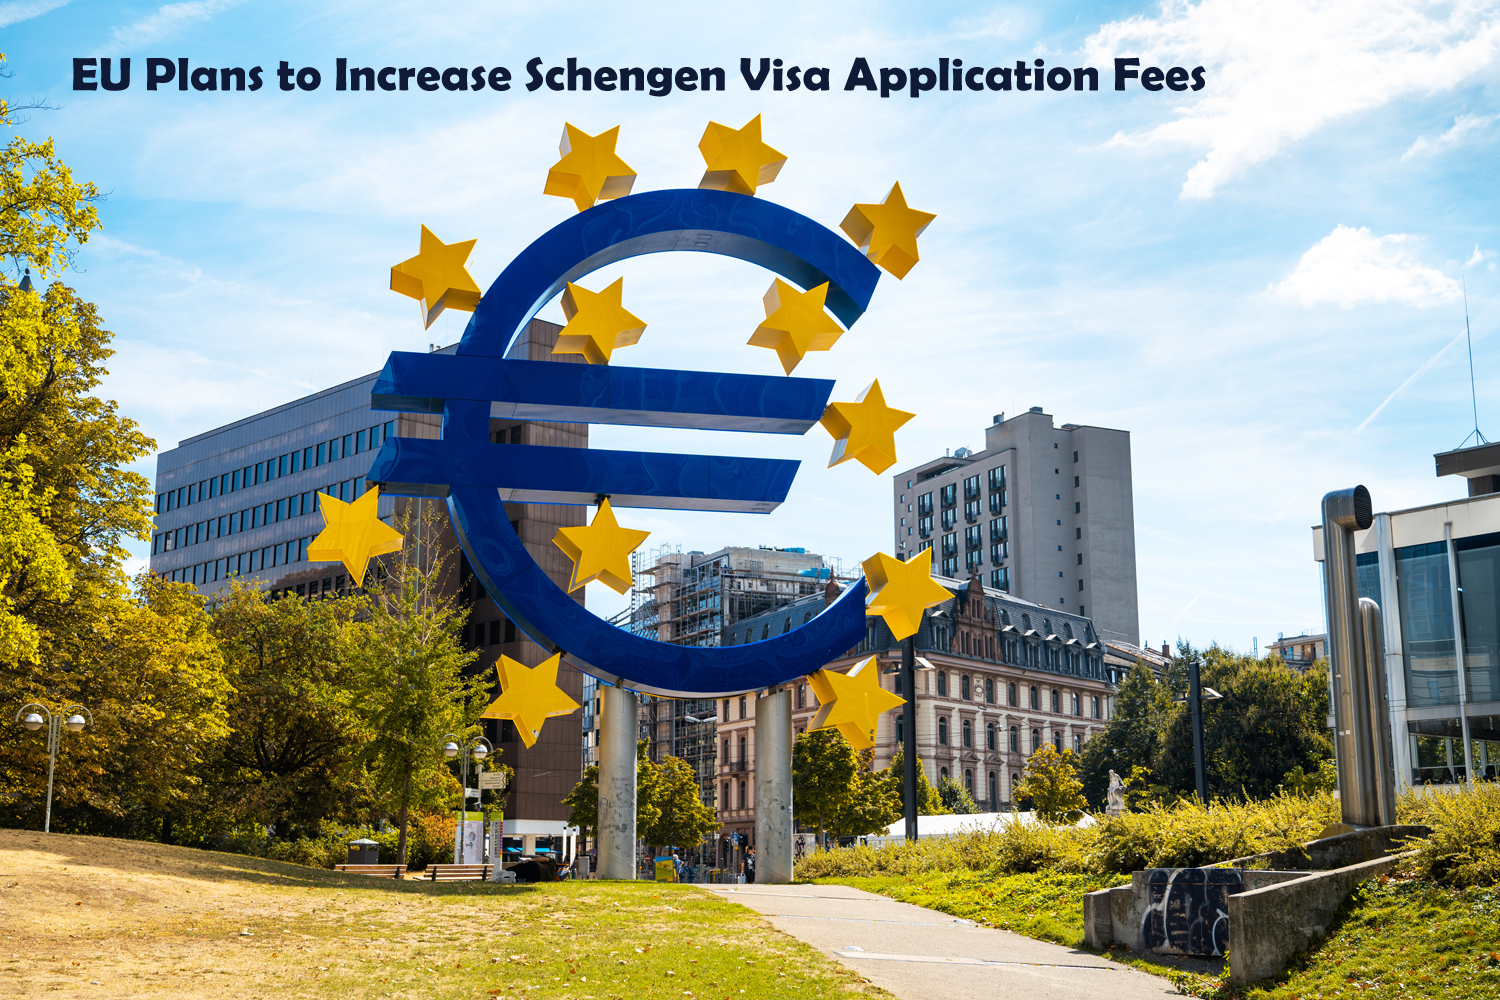 EU Plans to Increase Schengen Visa Application Fees.